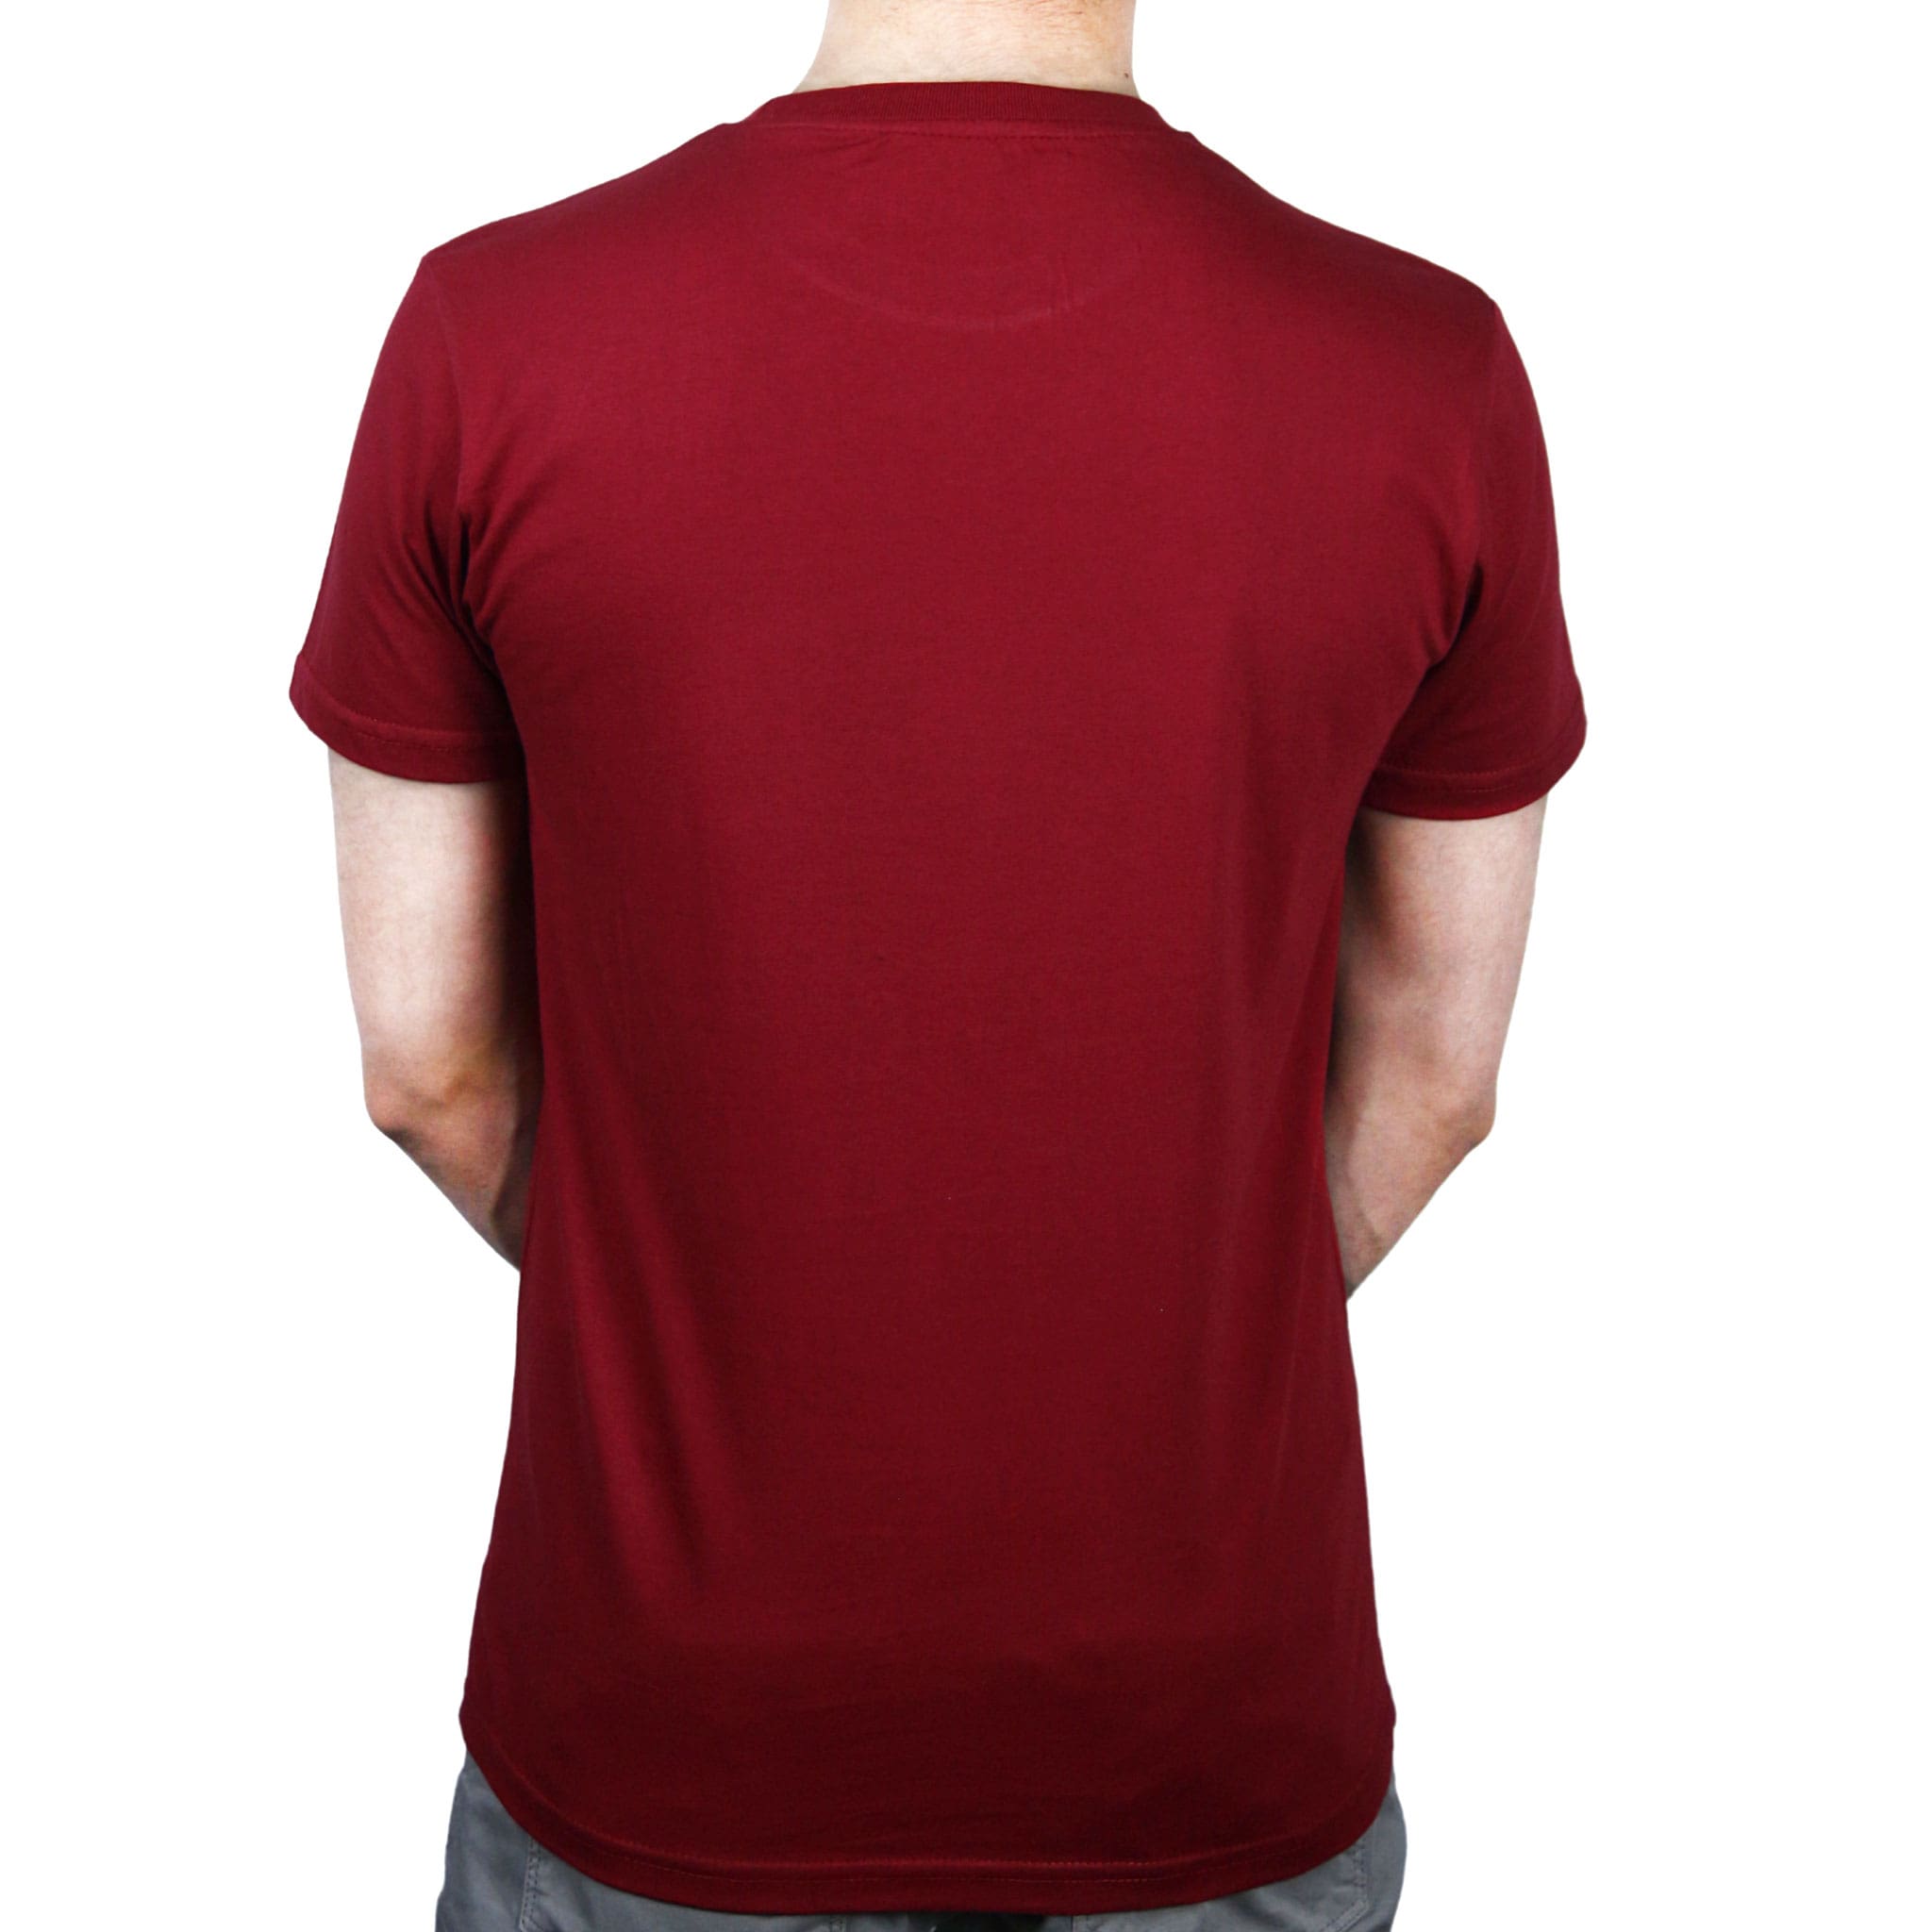 maroon tshirt plain